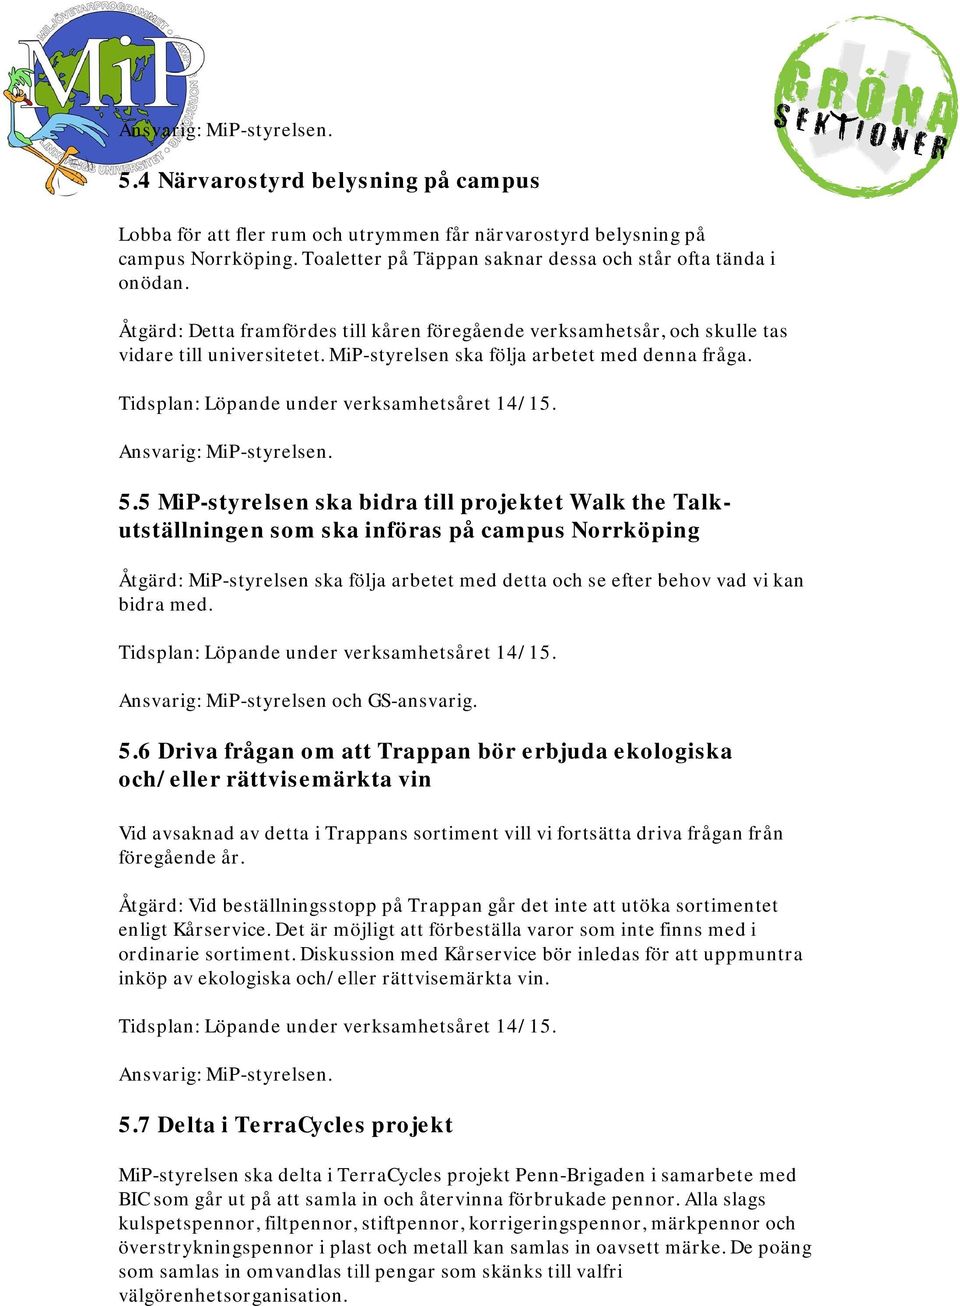 5 MiP-styrelsen ska bidra till projektet Walk the Talkutställningen som ska införas på campus Norrköping Åtgärd: MiP-styrelsen ska följa arbetet med detta och se efter behov vad vi kan bidra med.